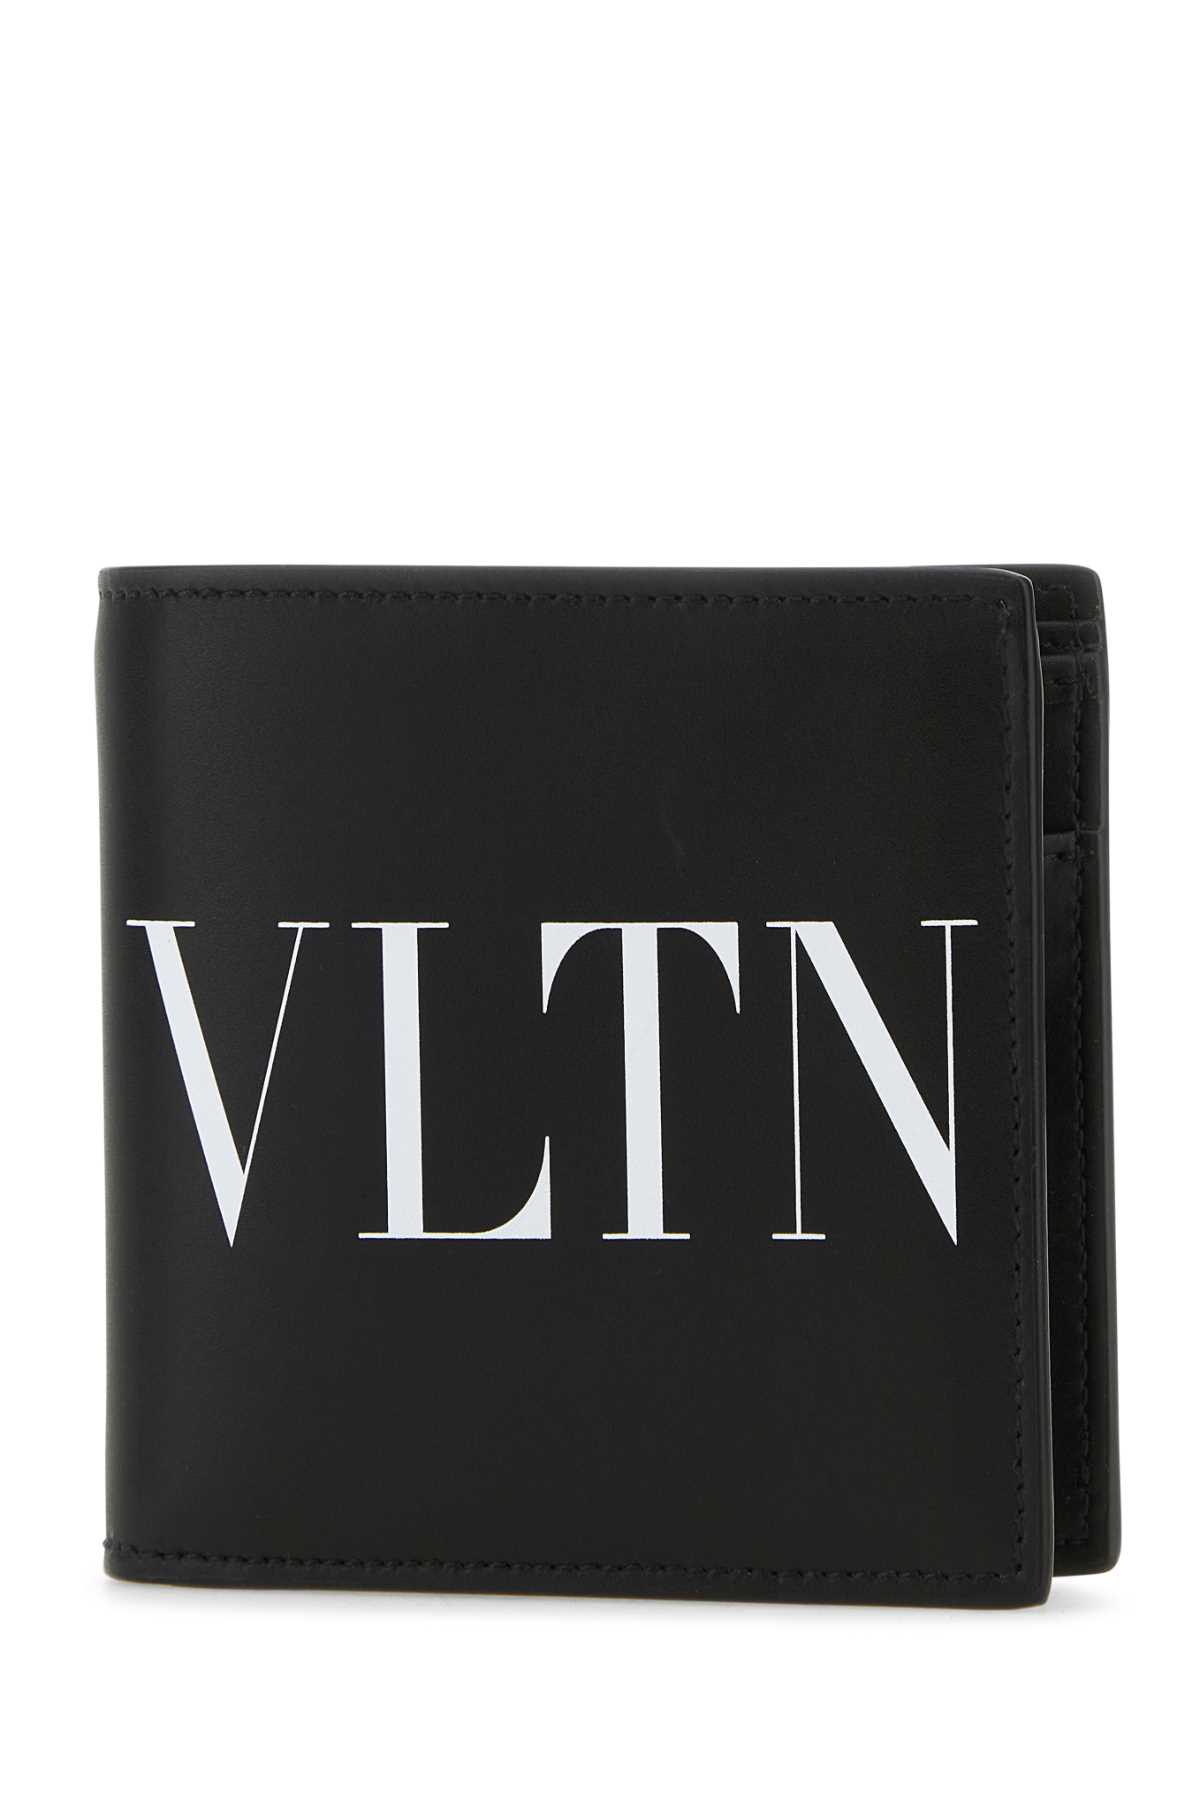 Valentino Garavani Black Leather Vltn Wallet In Nerobianco